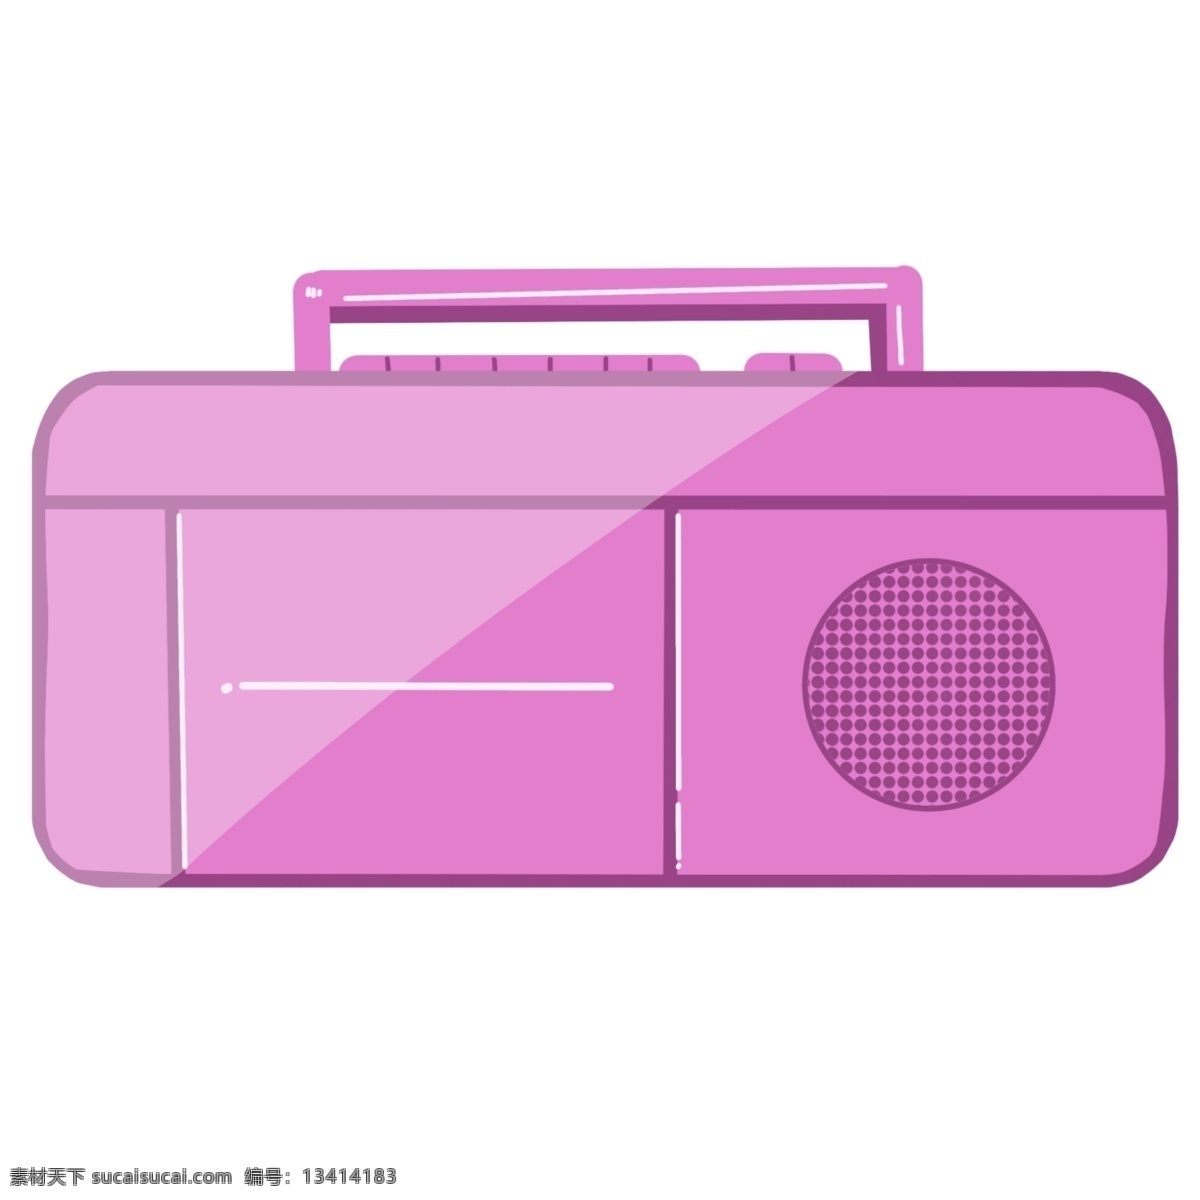 紫色 手提式 录音机 紫色录音机 电子产品 录音 播放音乐 音乐播放器 磁带 手提式录音机 电子